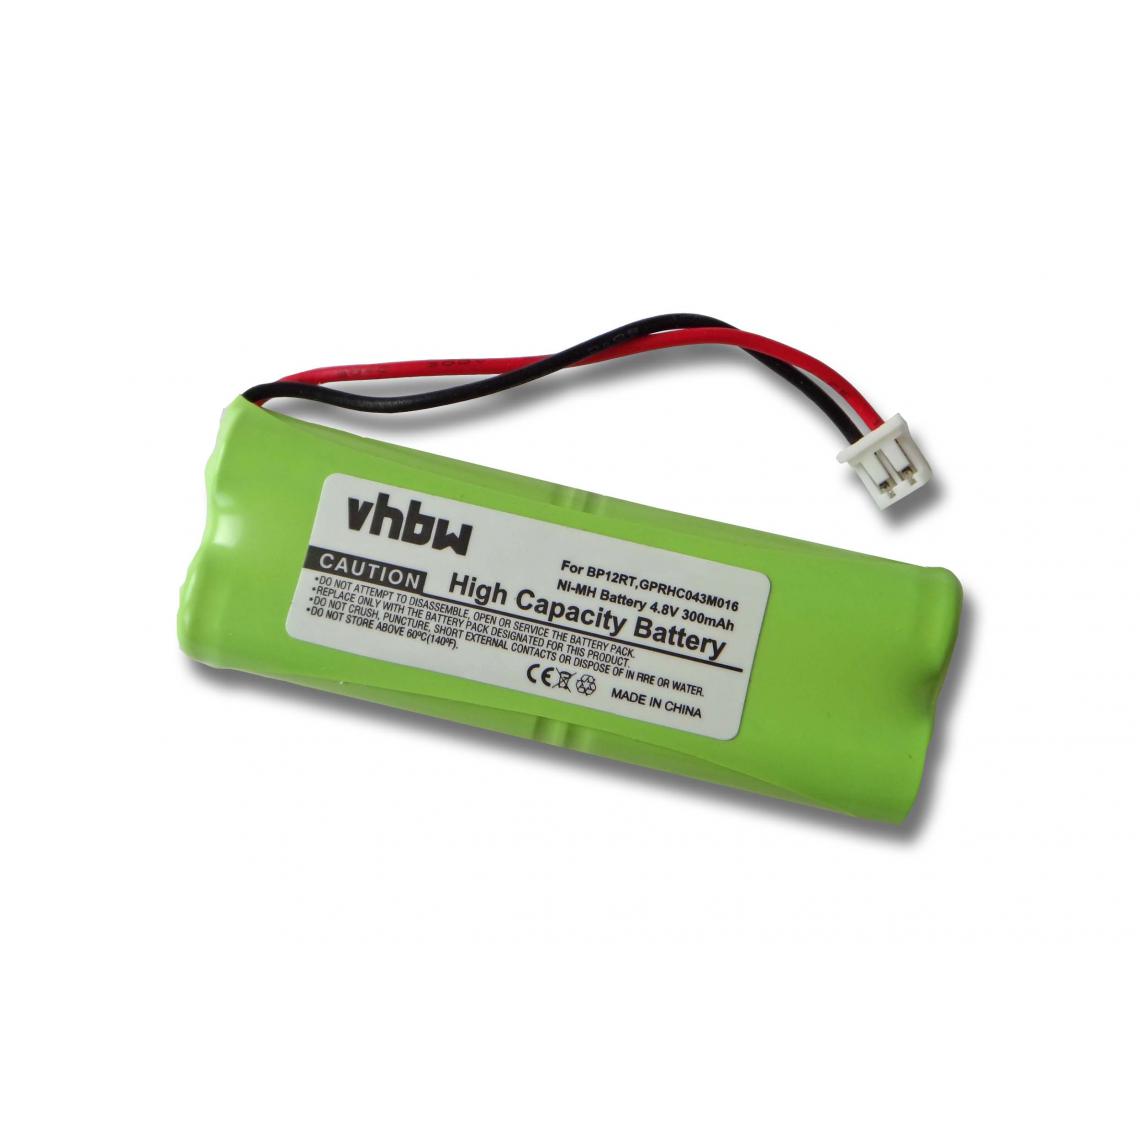 Vhbw - vhbw batterie compatible avec Dogtra 300M Transmitter, 302M Transmitter, 7000M Transmitter collier de dressage (300mAh, 4,8V, NiMH) - Collier pour chien